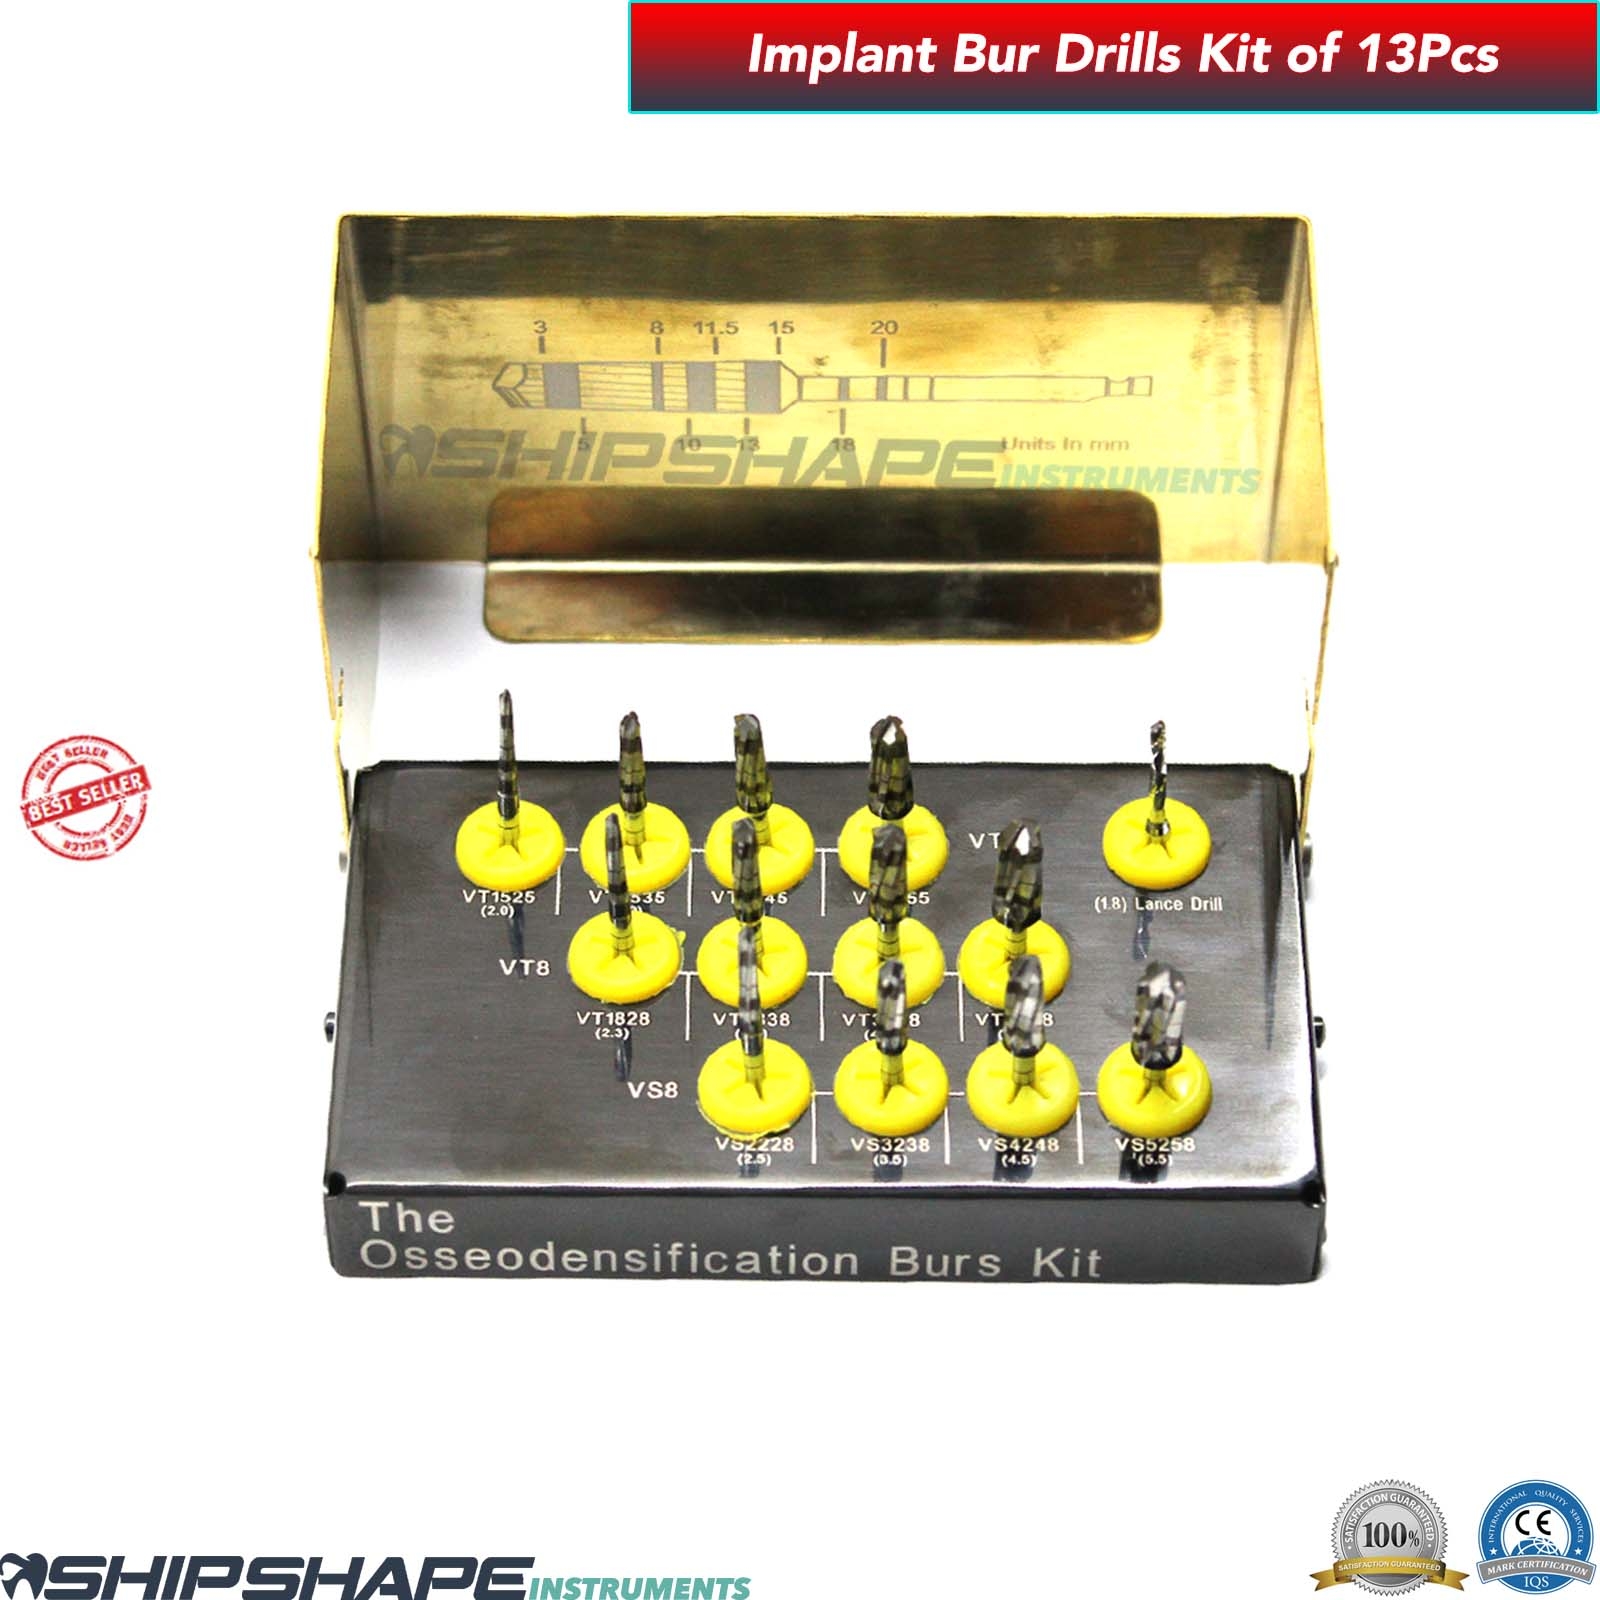 Bur Drills Kit Titanium Coated Dental Implant Universal Burs Drill Set of 13 Pcs Kit $179.00 Only-1552